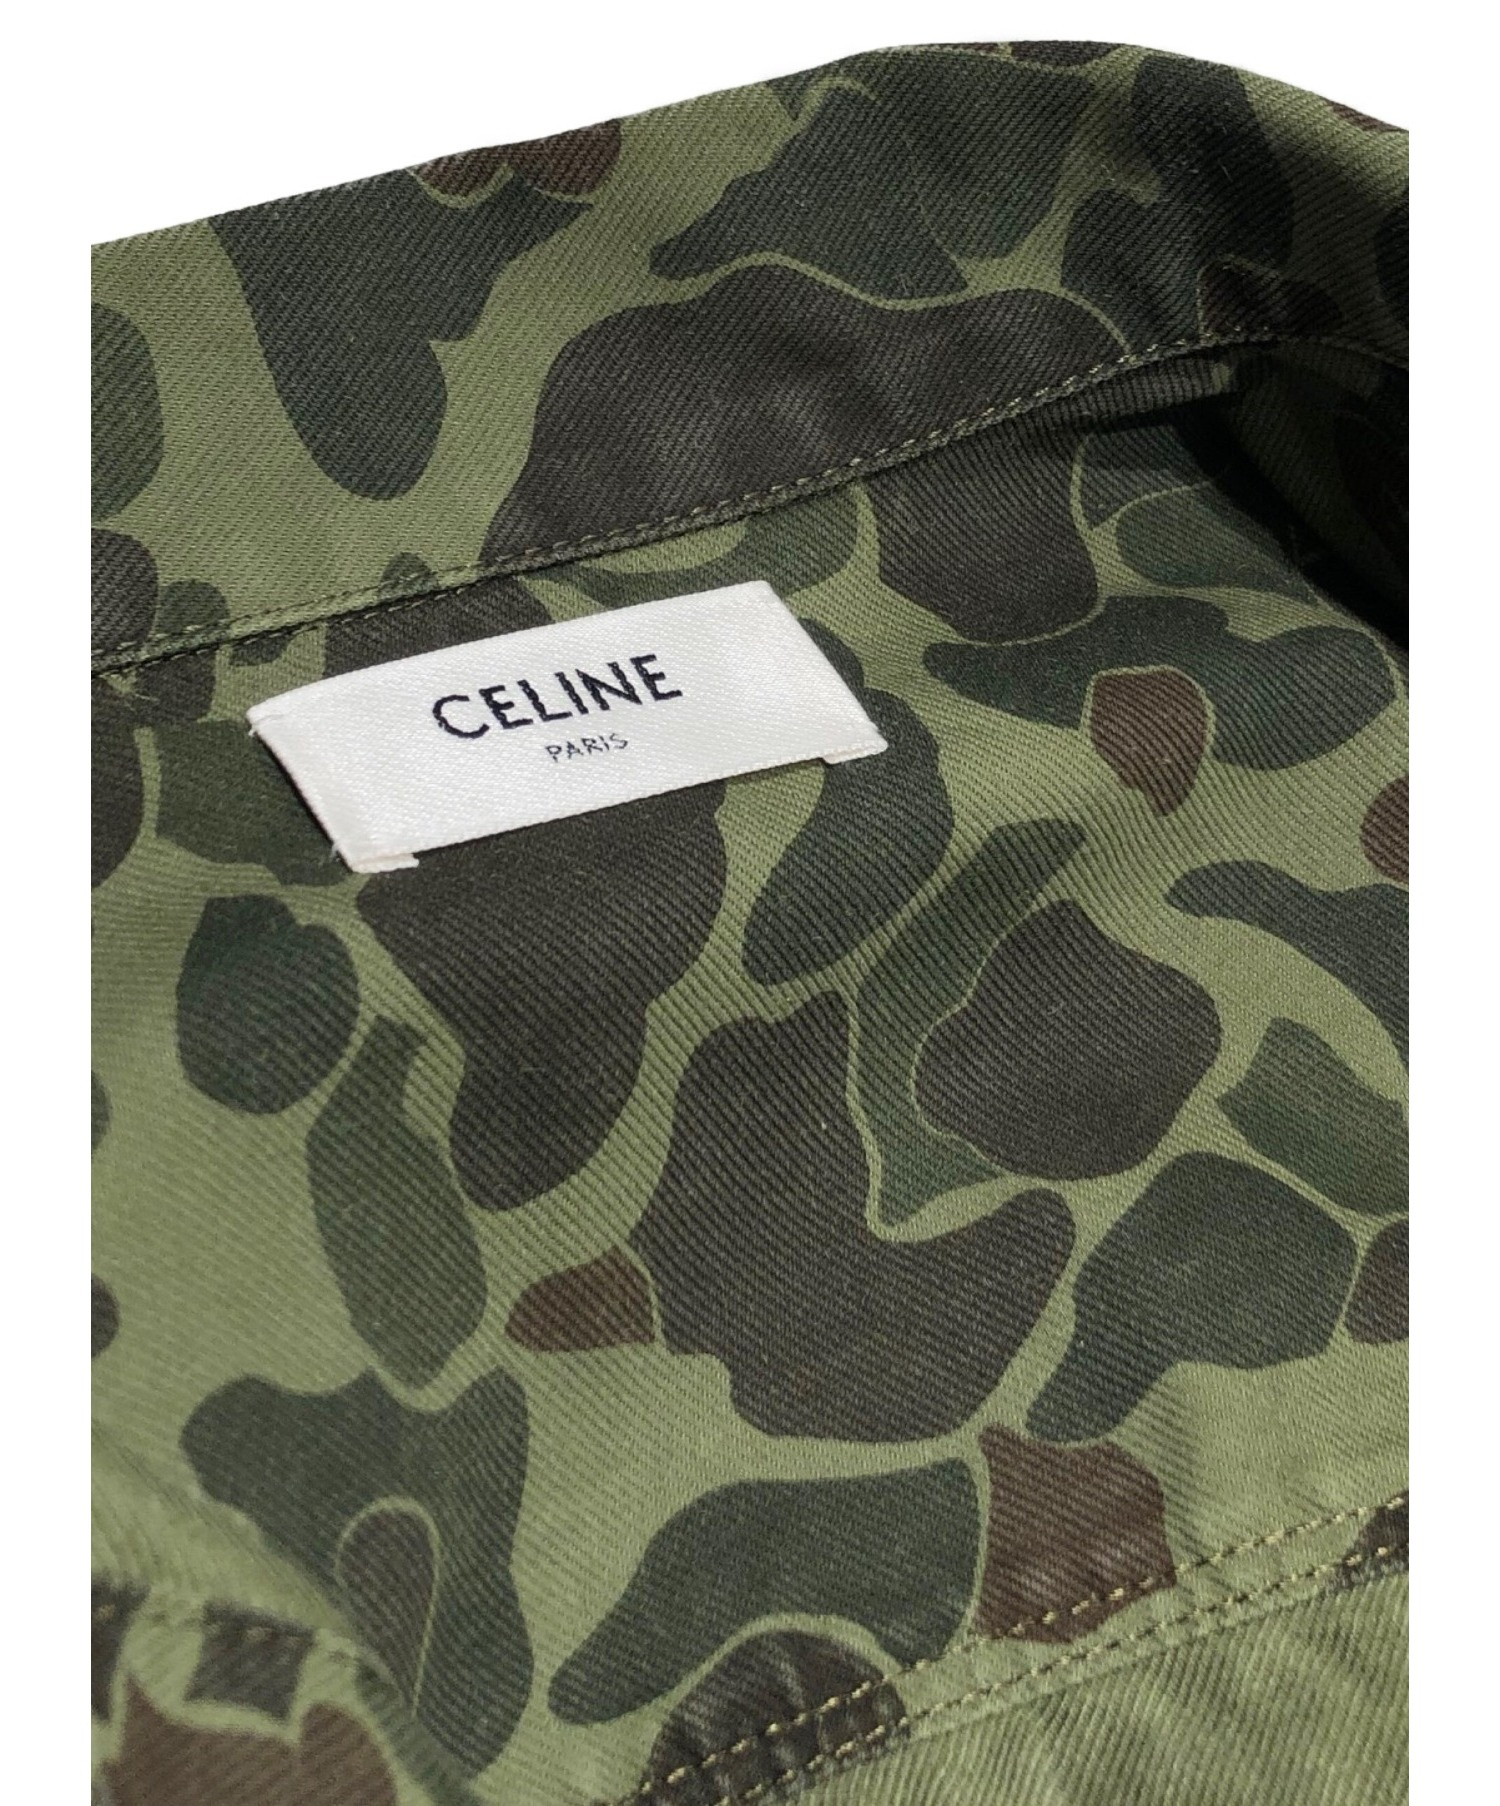 CELINE (セリーヌ) ミリタリーオーバーシャツ サイズ:M カモフラージュ 